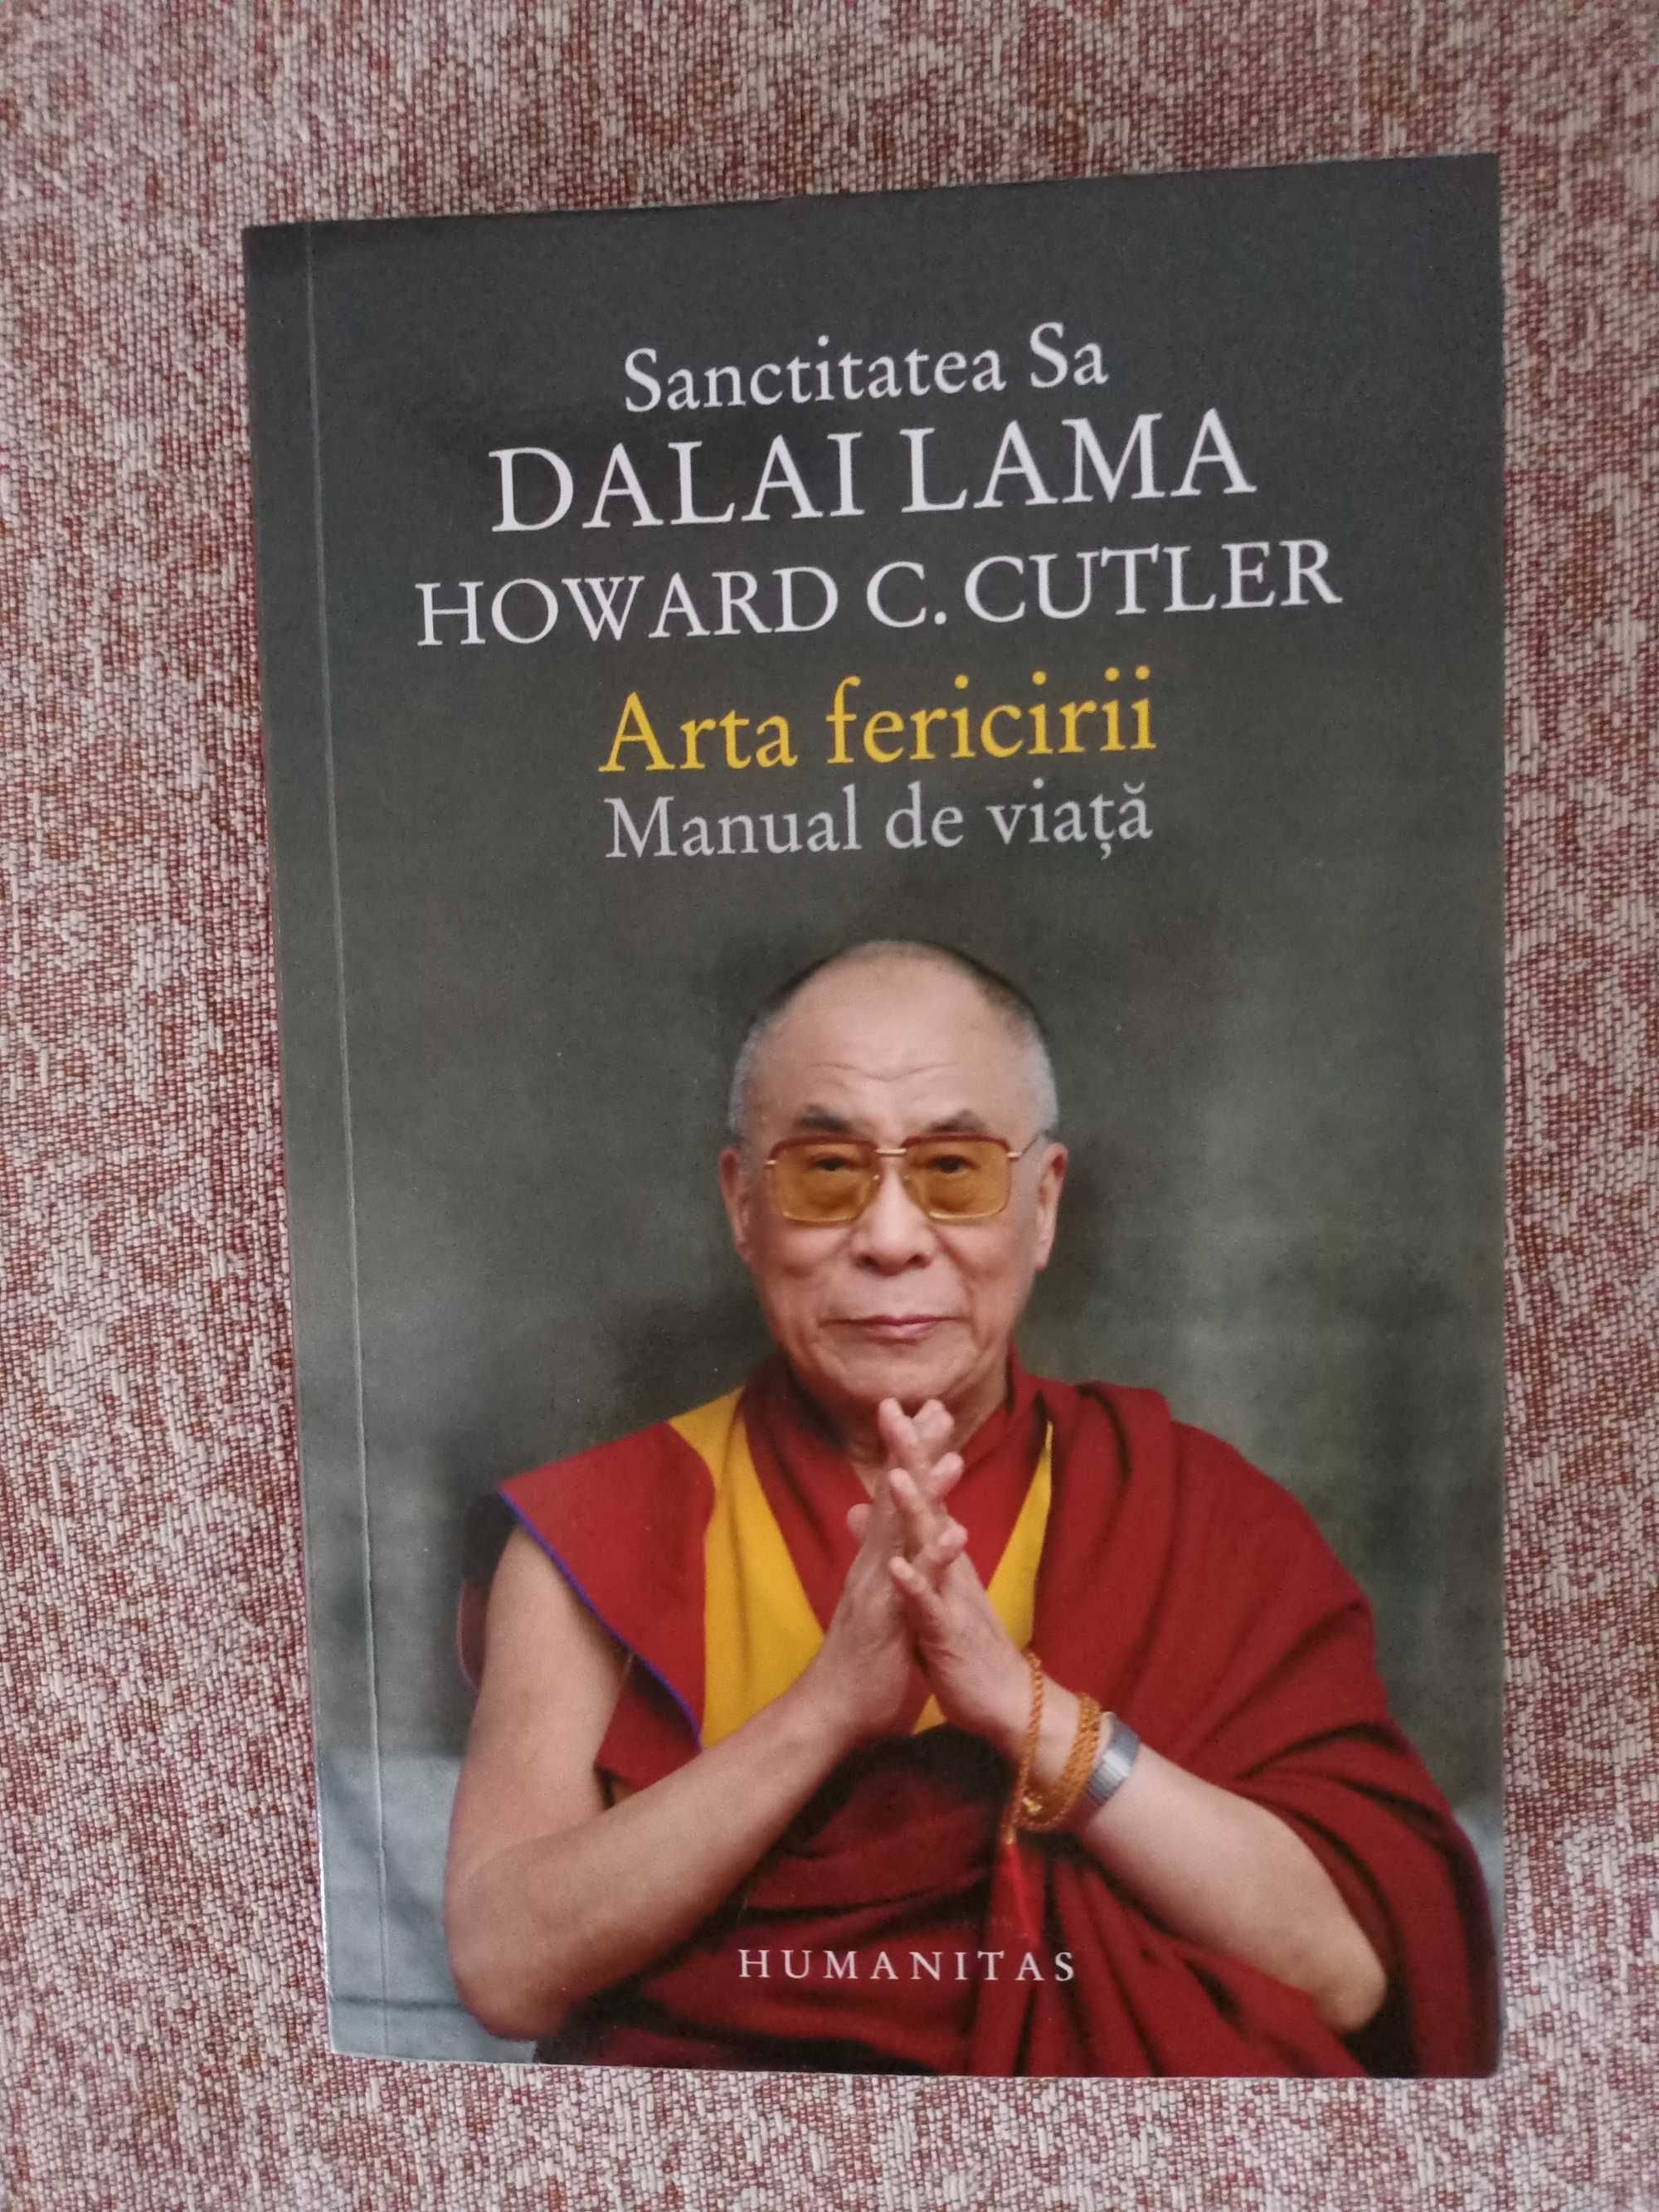 DALAI LAMA, HOWARD C. CUTLER
Arta fericirii. Manual de viata